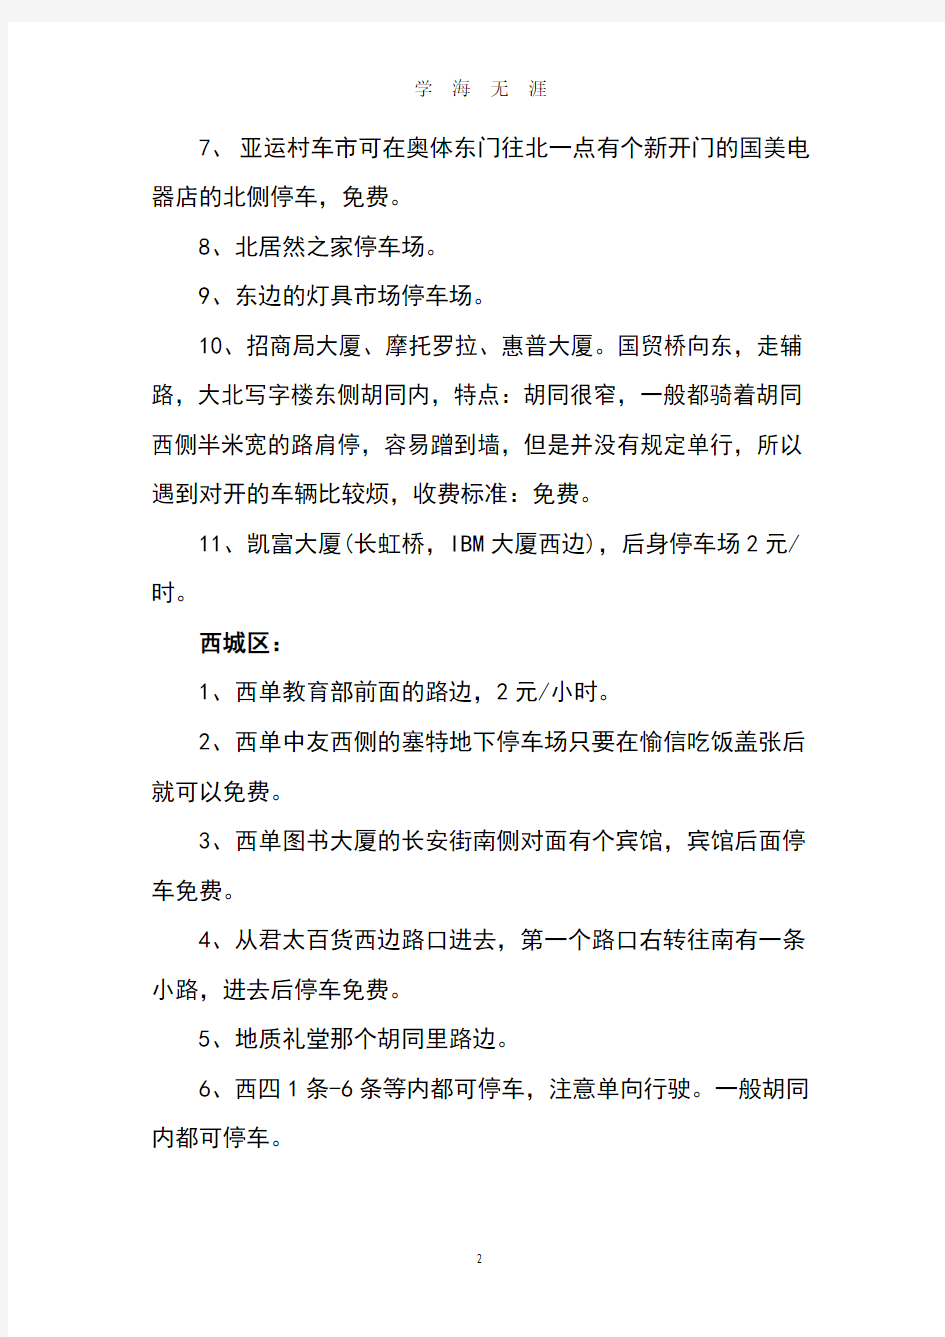 北京免费停车指南大全(2020年8月整理).pdf